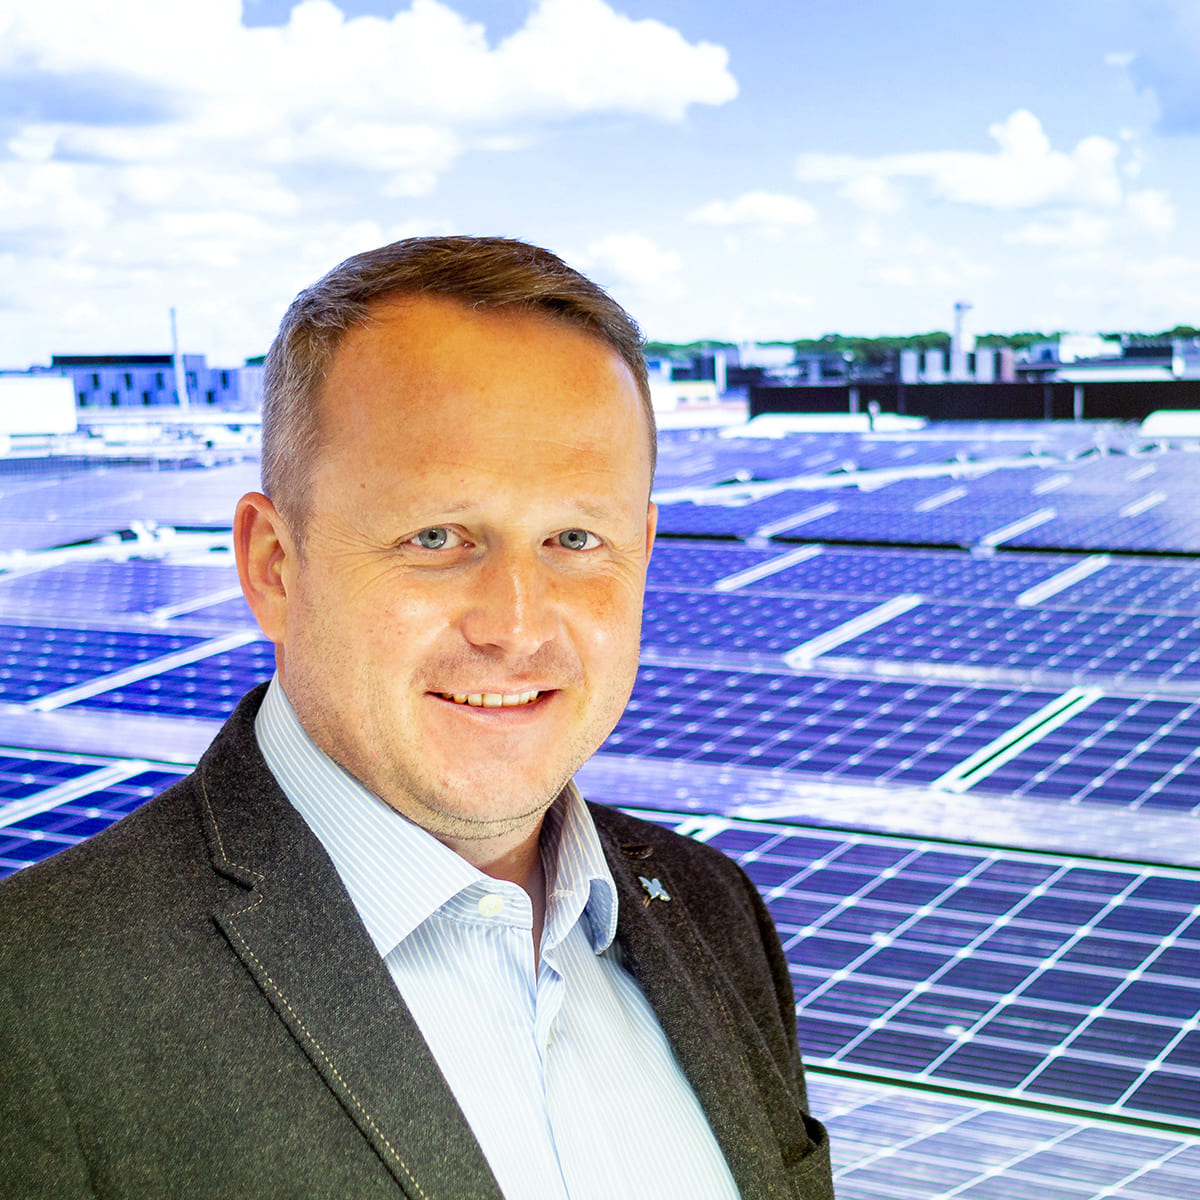 ENPLA GmbH Photovoltaik - Christian Joos